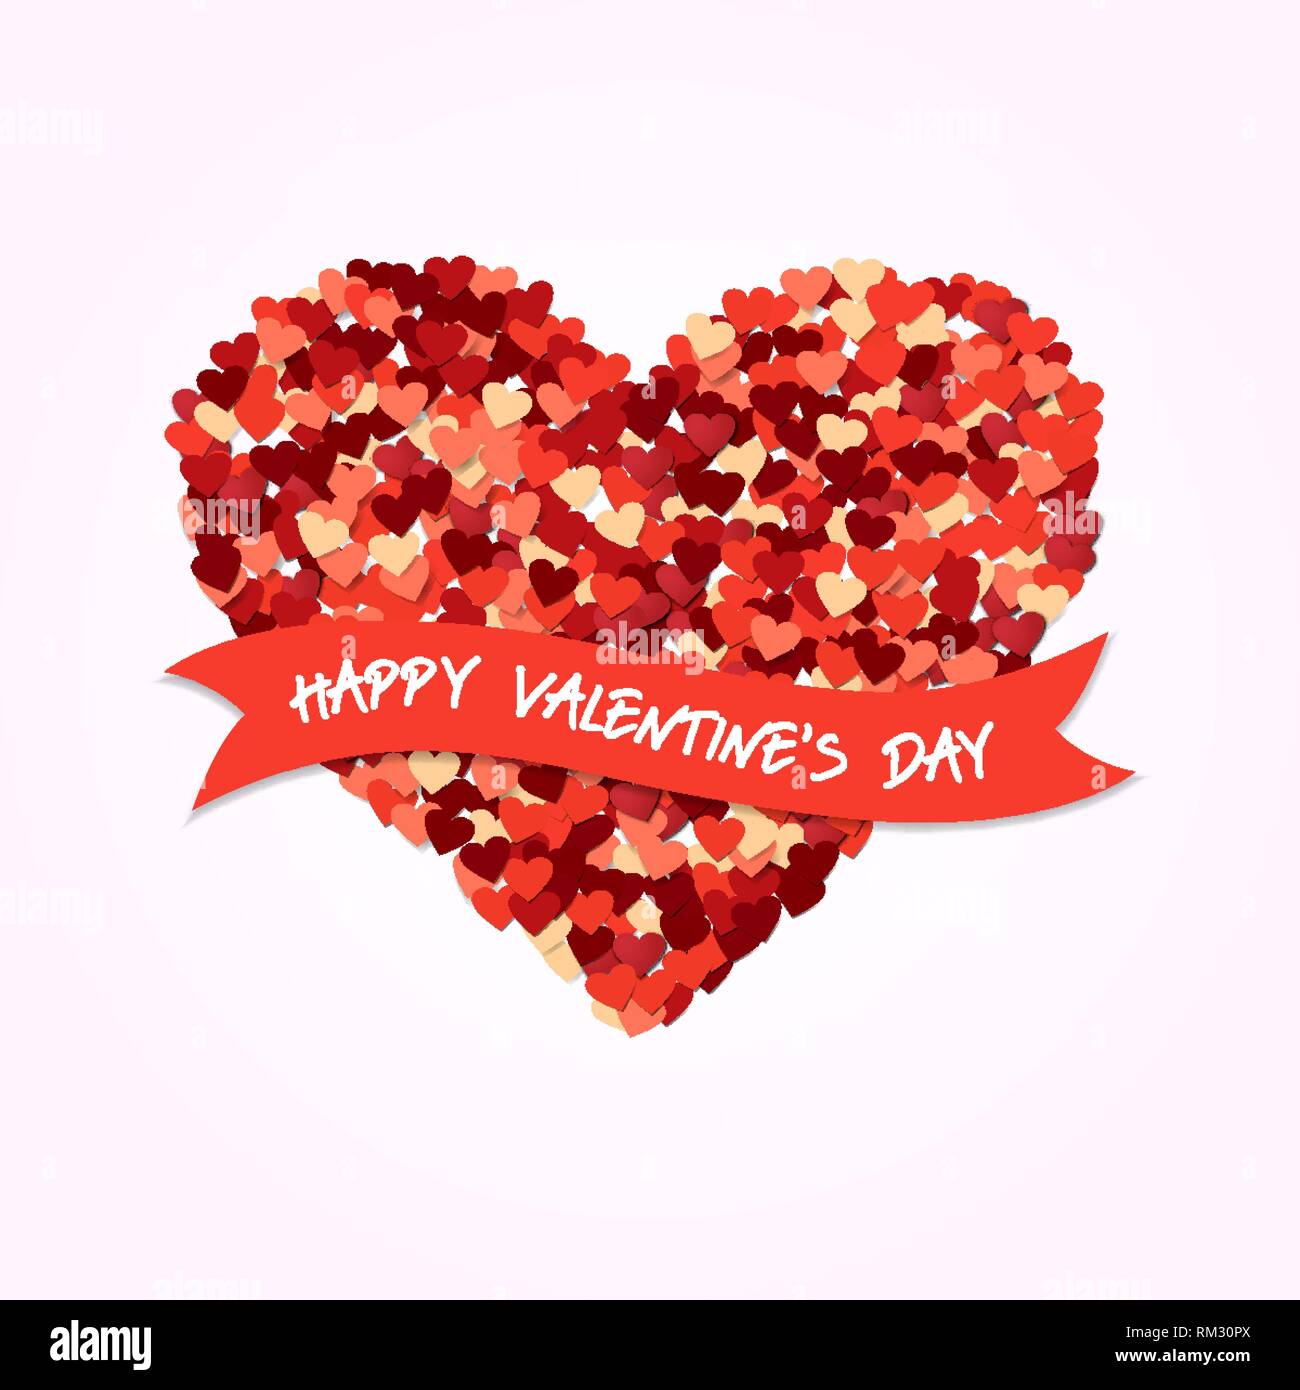 Happy Valentines Tag liebe Konzept Abbildung. Red Heart Shape Design Komposition mit Urlaub Typografie Zitat. Stock Vektor